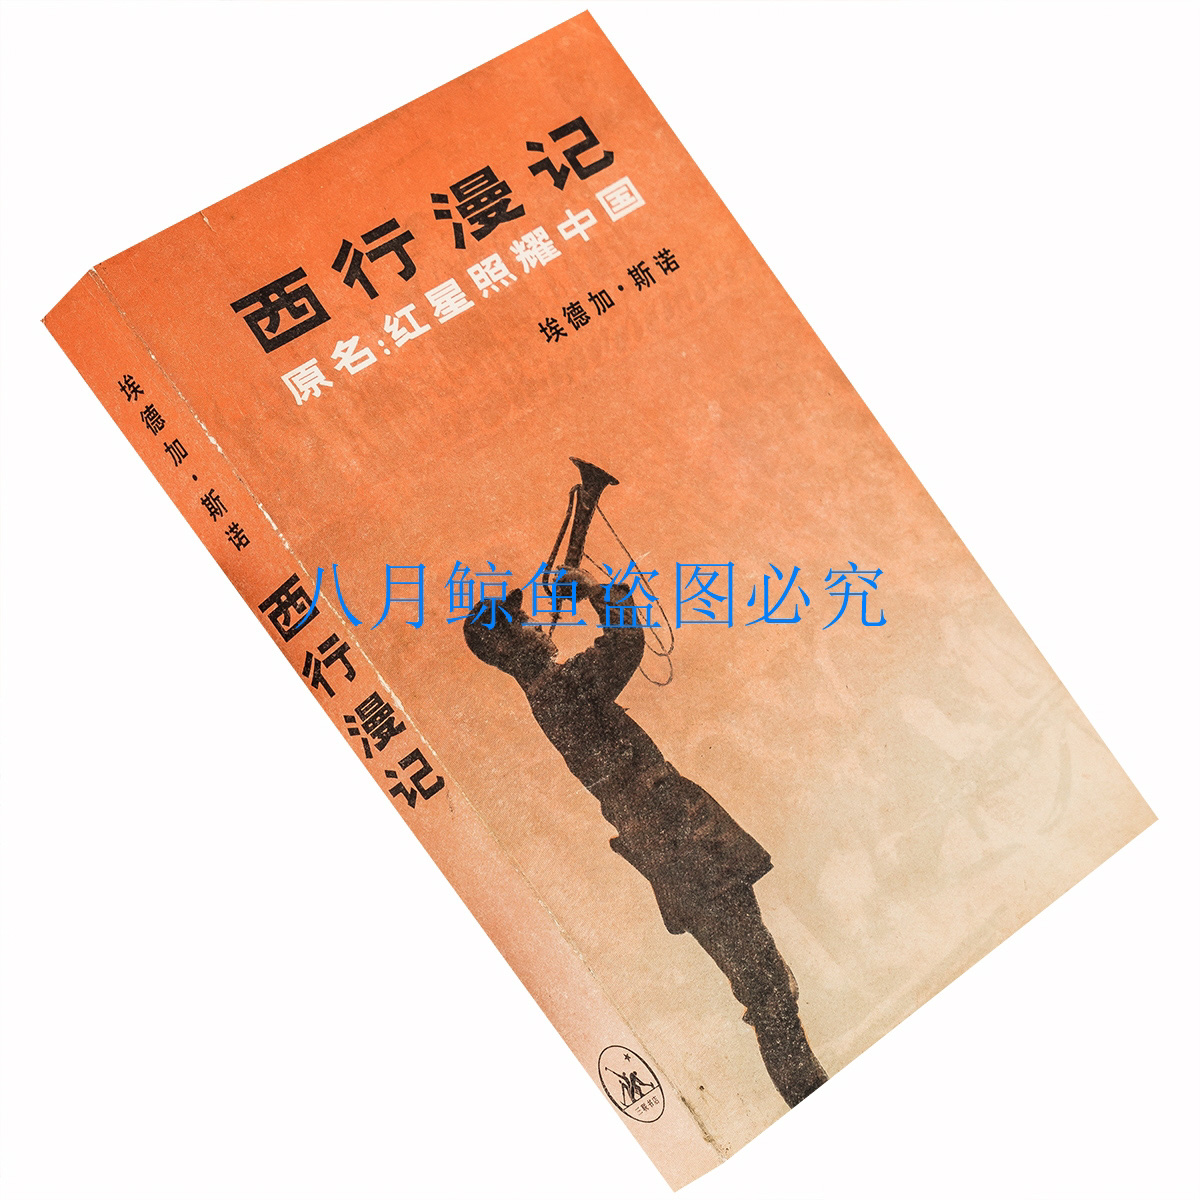 西行漫记 红星照耀中国 埃德加斯诺 董乐山翻译 大量插图  全译本三联版 1979年老版